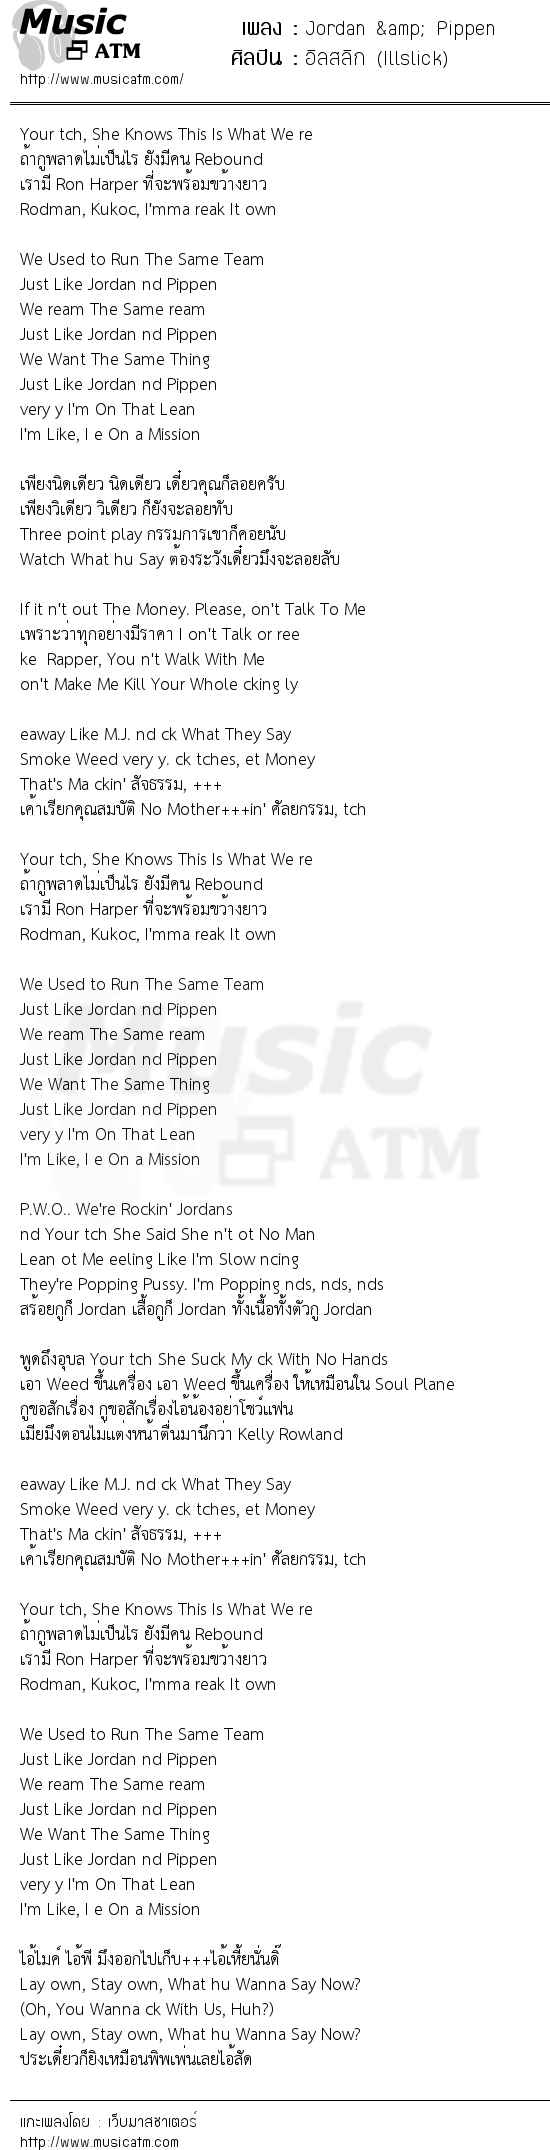 เนื้อเพลง Jordan & Pippen - อิลสลิก (Illslick) | เพลงไทย